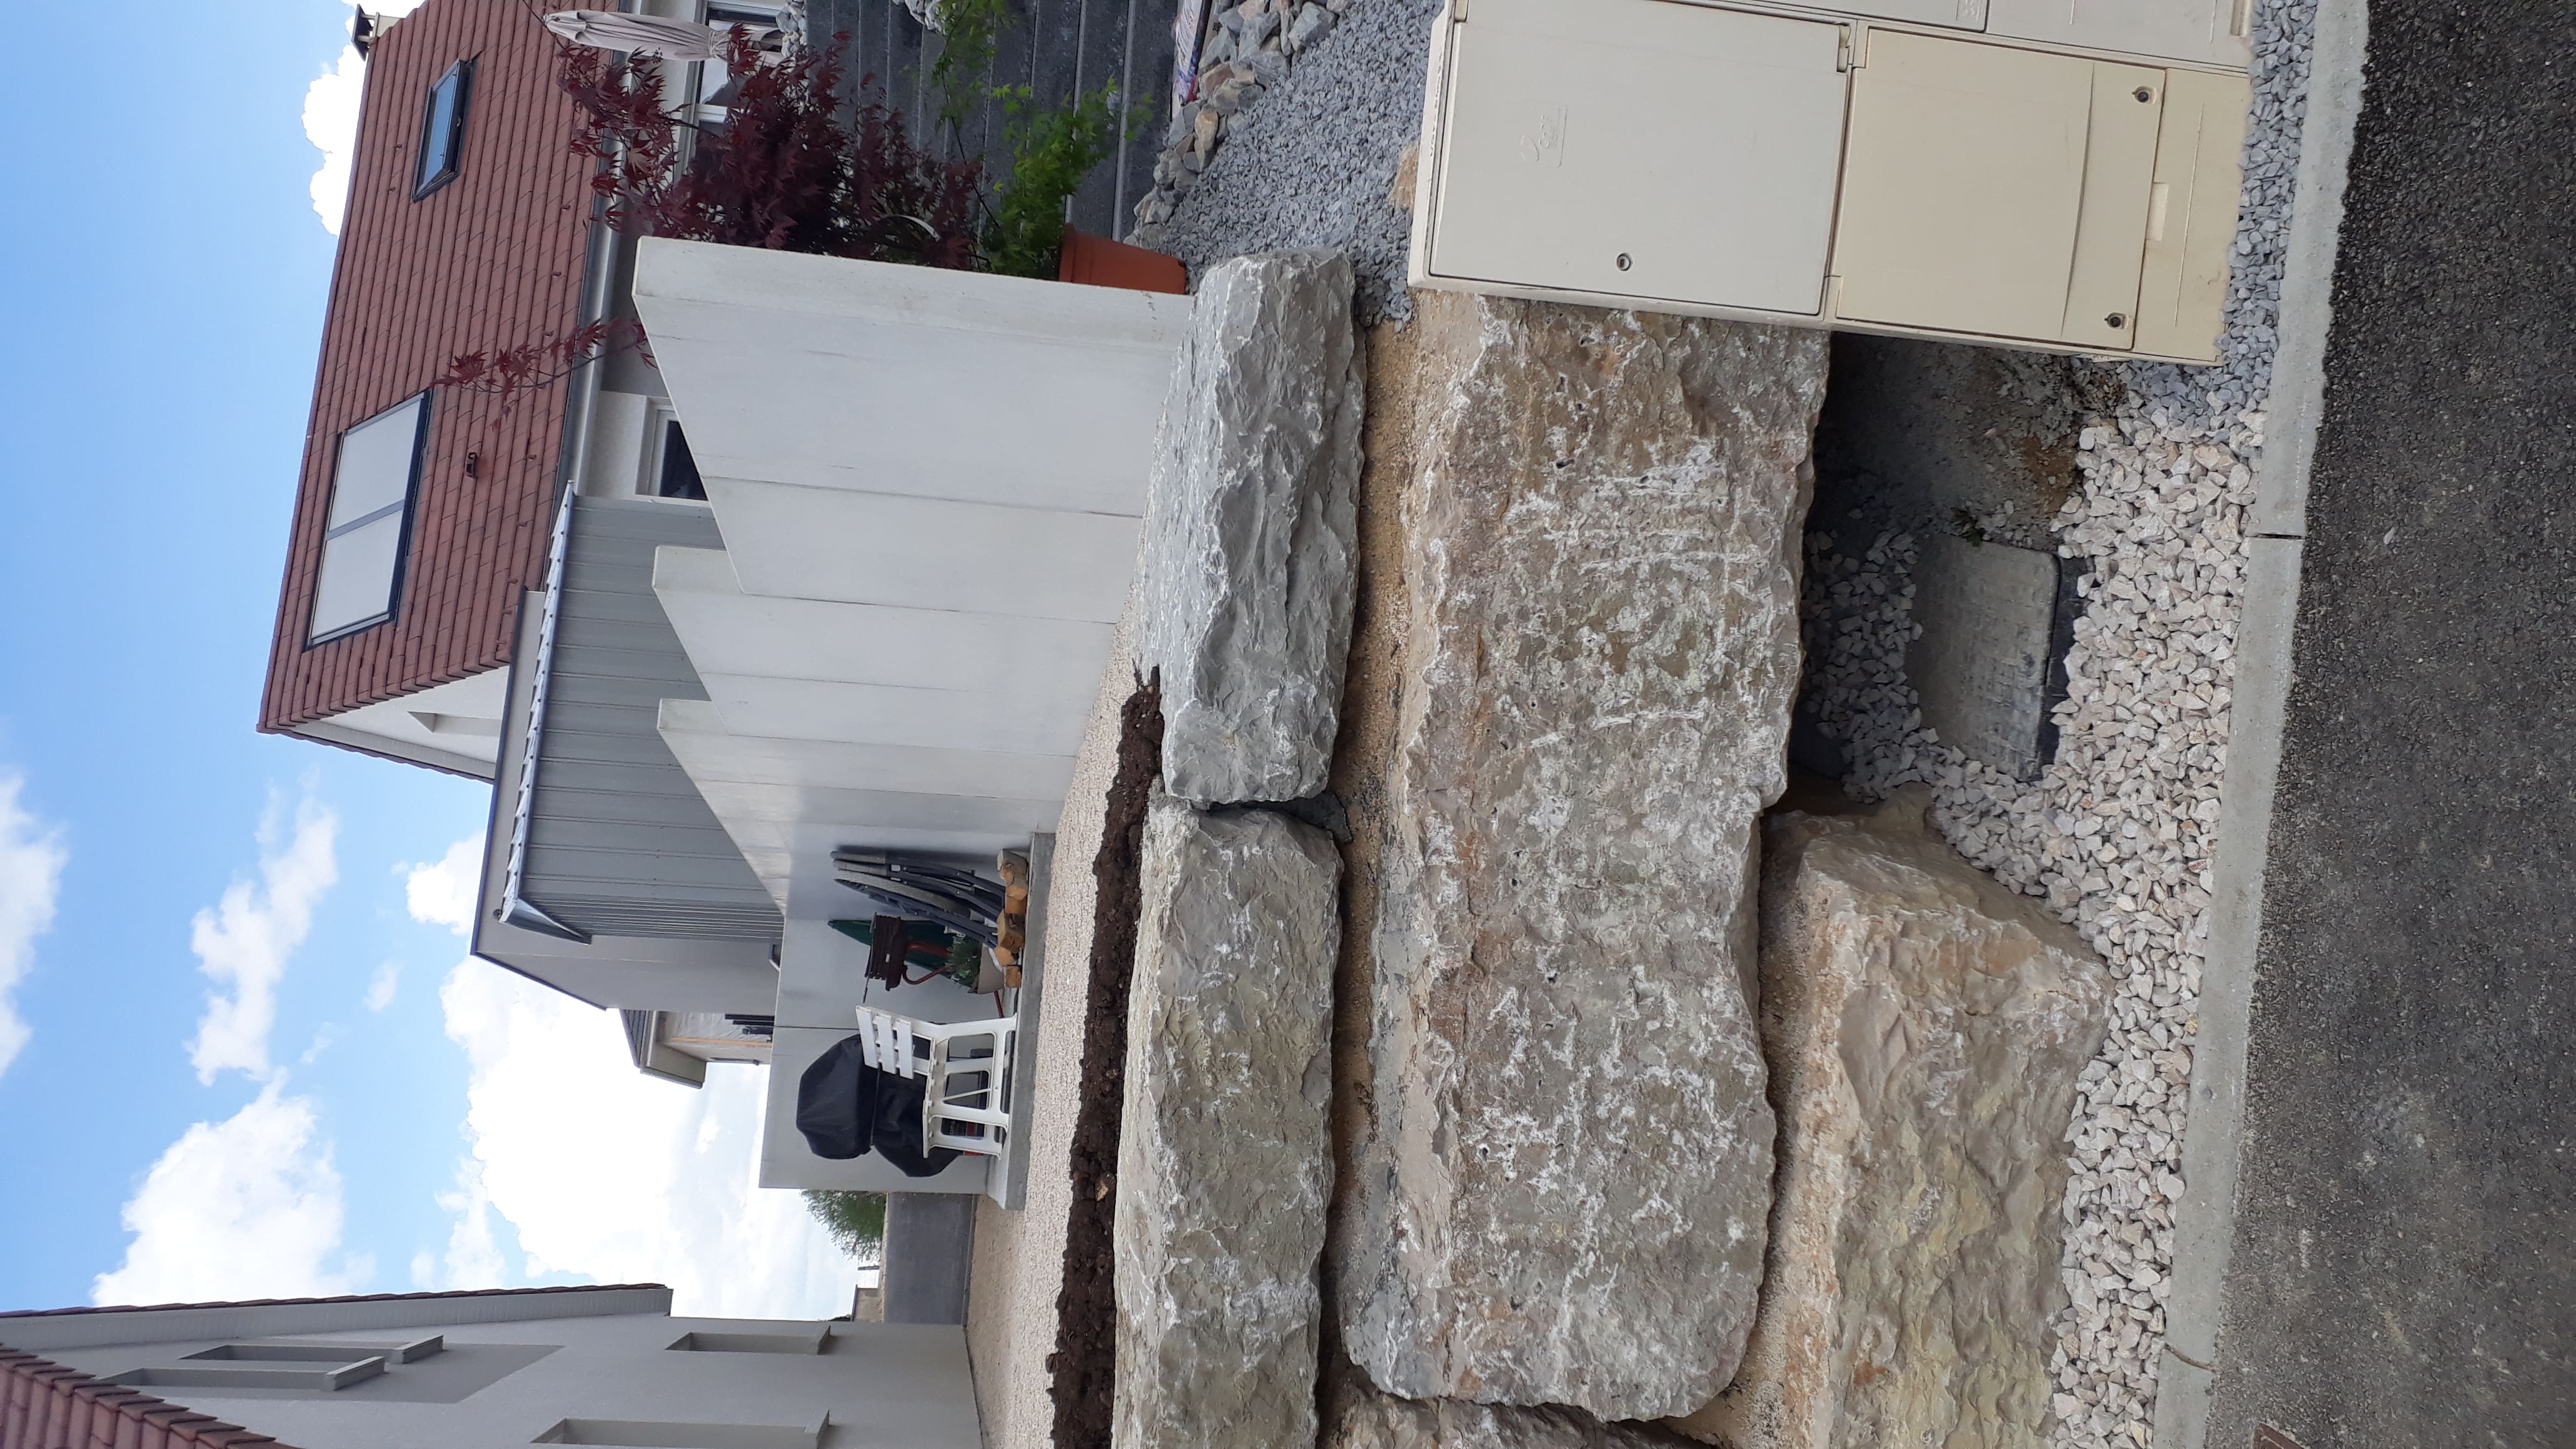 enrochement-mur-beton-terrasse-exterieur-maison-travaux-publics-TP-pontarlier-doubs-franche-comte-02